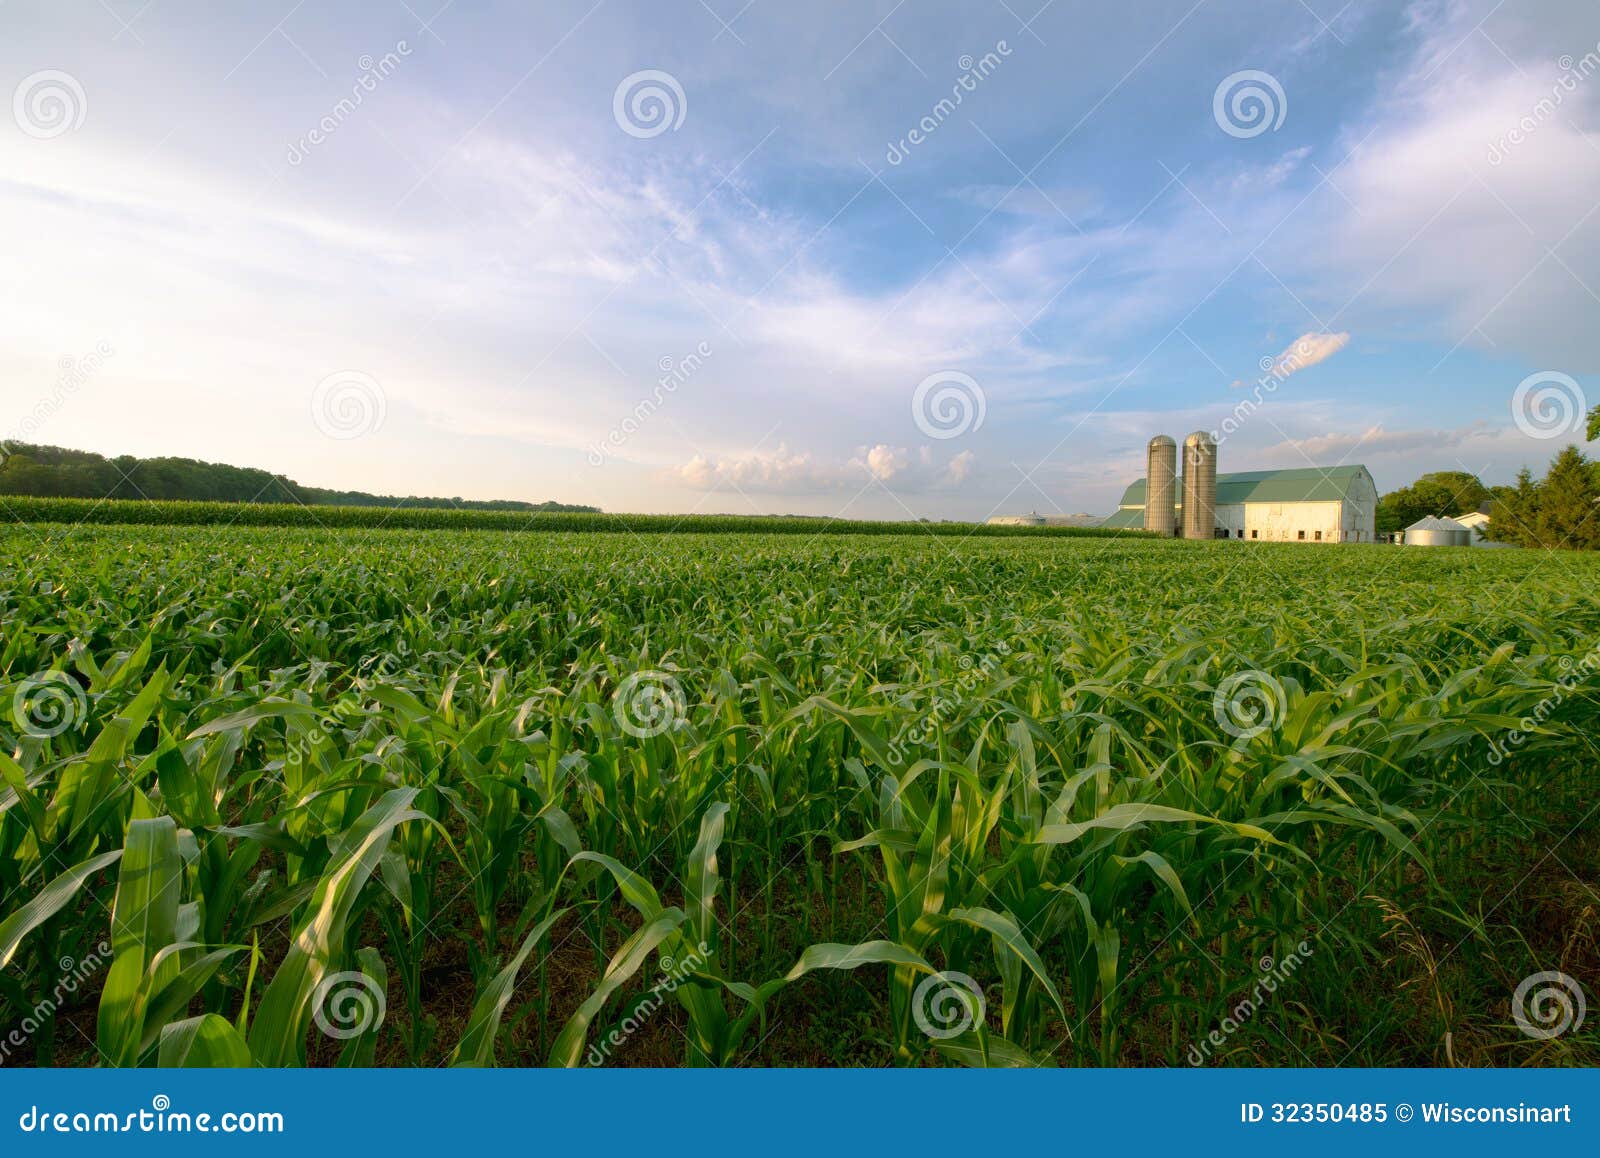 wisconsin dairy farm, barn by field of corn